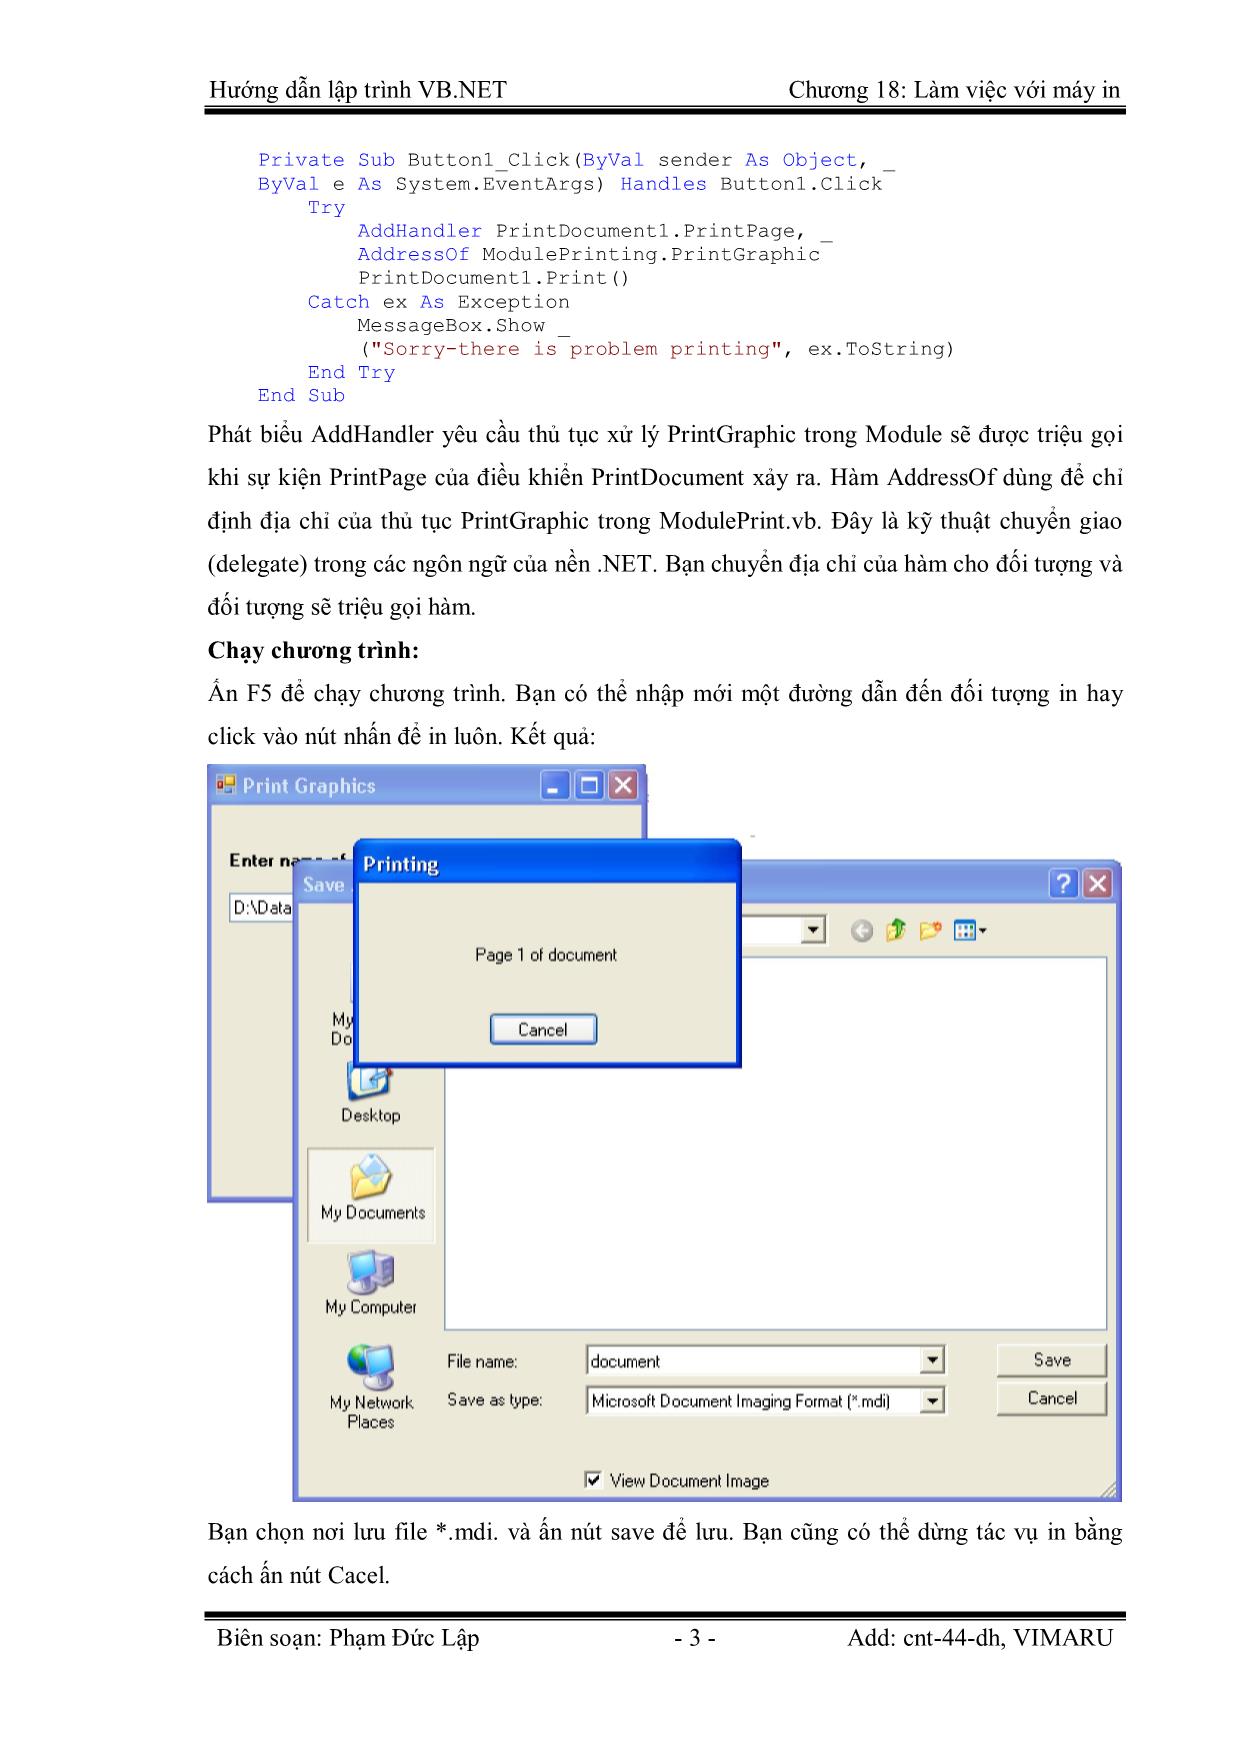 Giáo trình Hướng dẫn lập trình VB.NET - Chương 18: Làm việc với máy in - Phạm Đức Lập trang 3